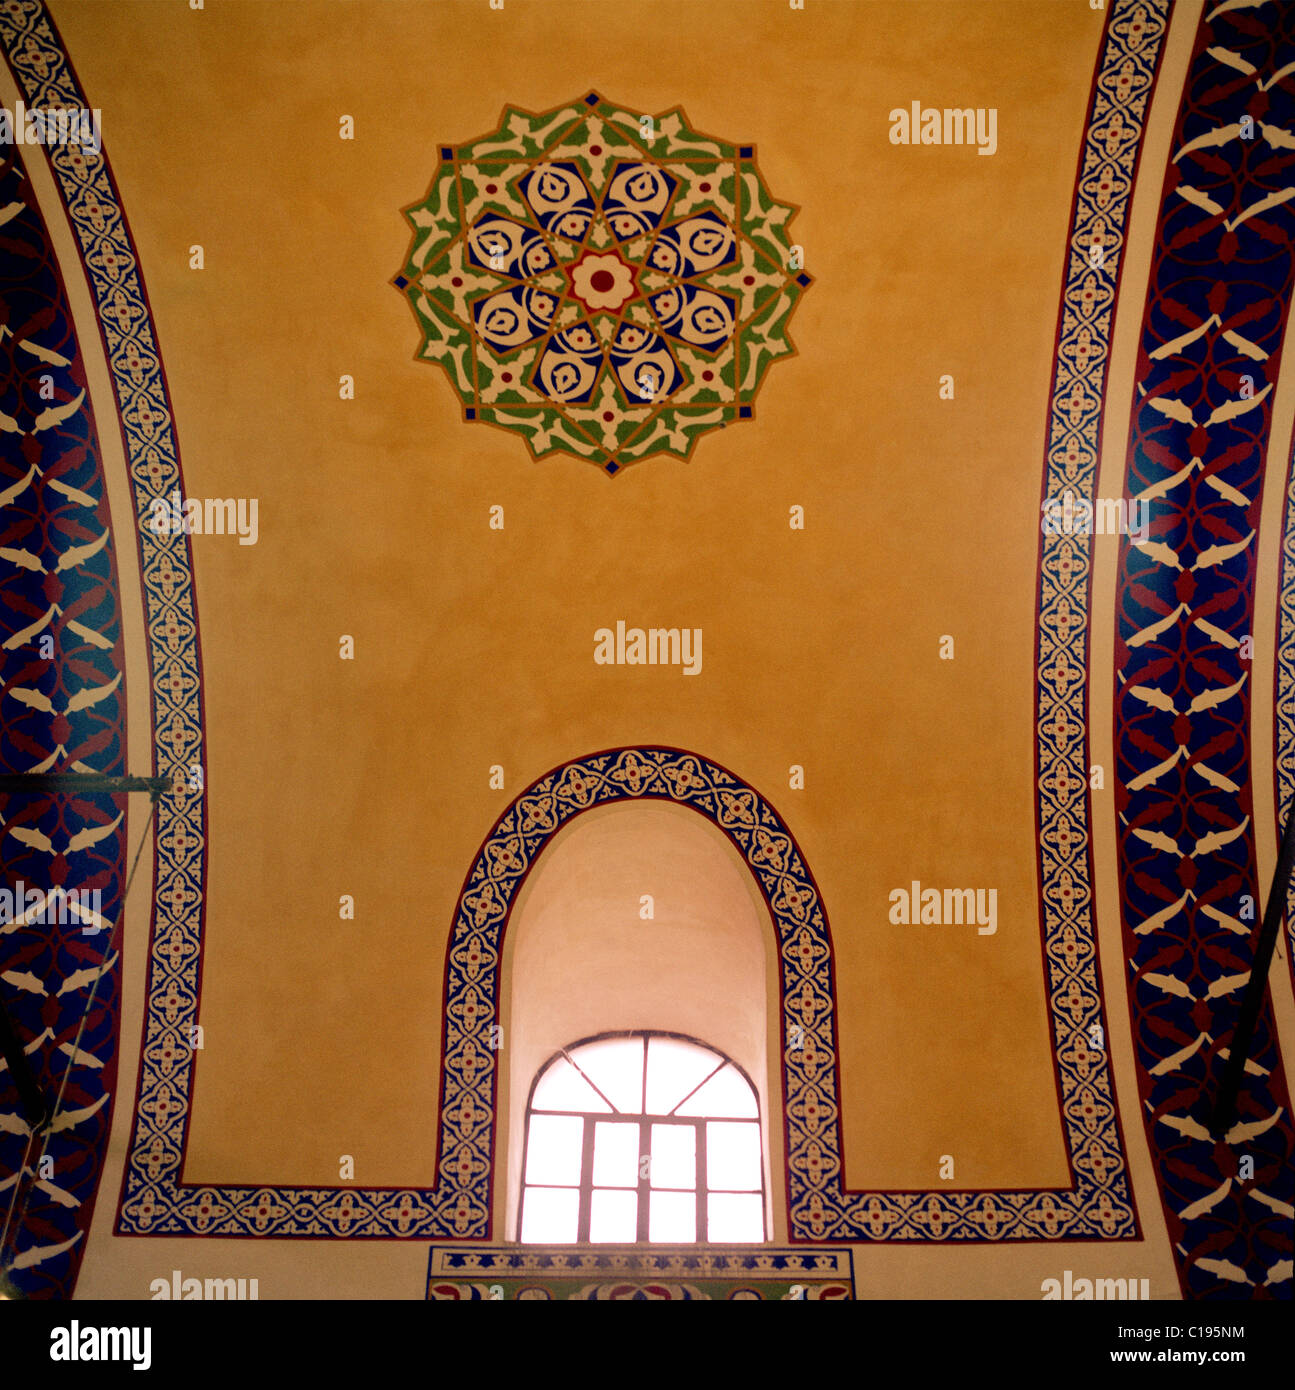 Ottoman Turkish art with geometric patterns 12563484 Stock Photo